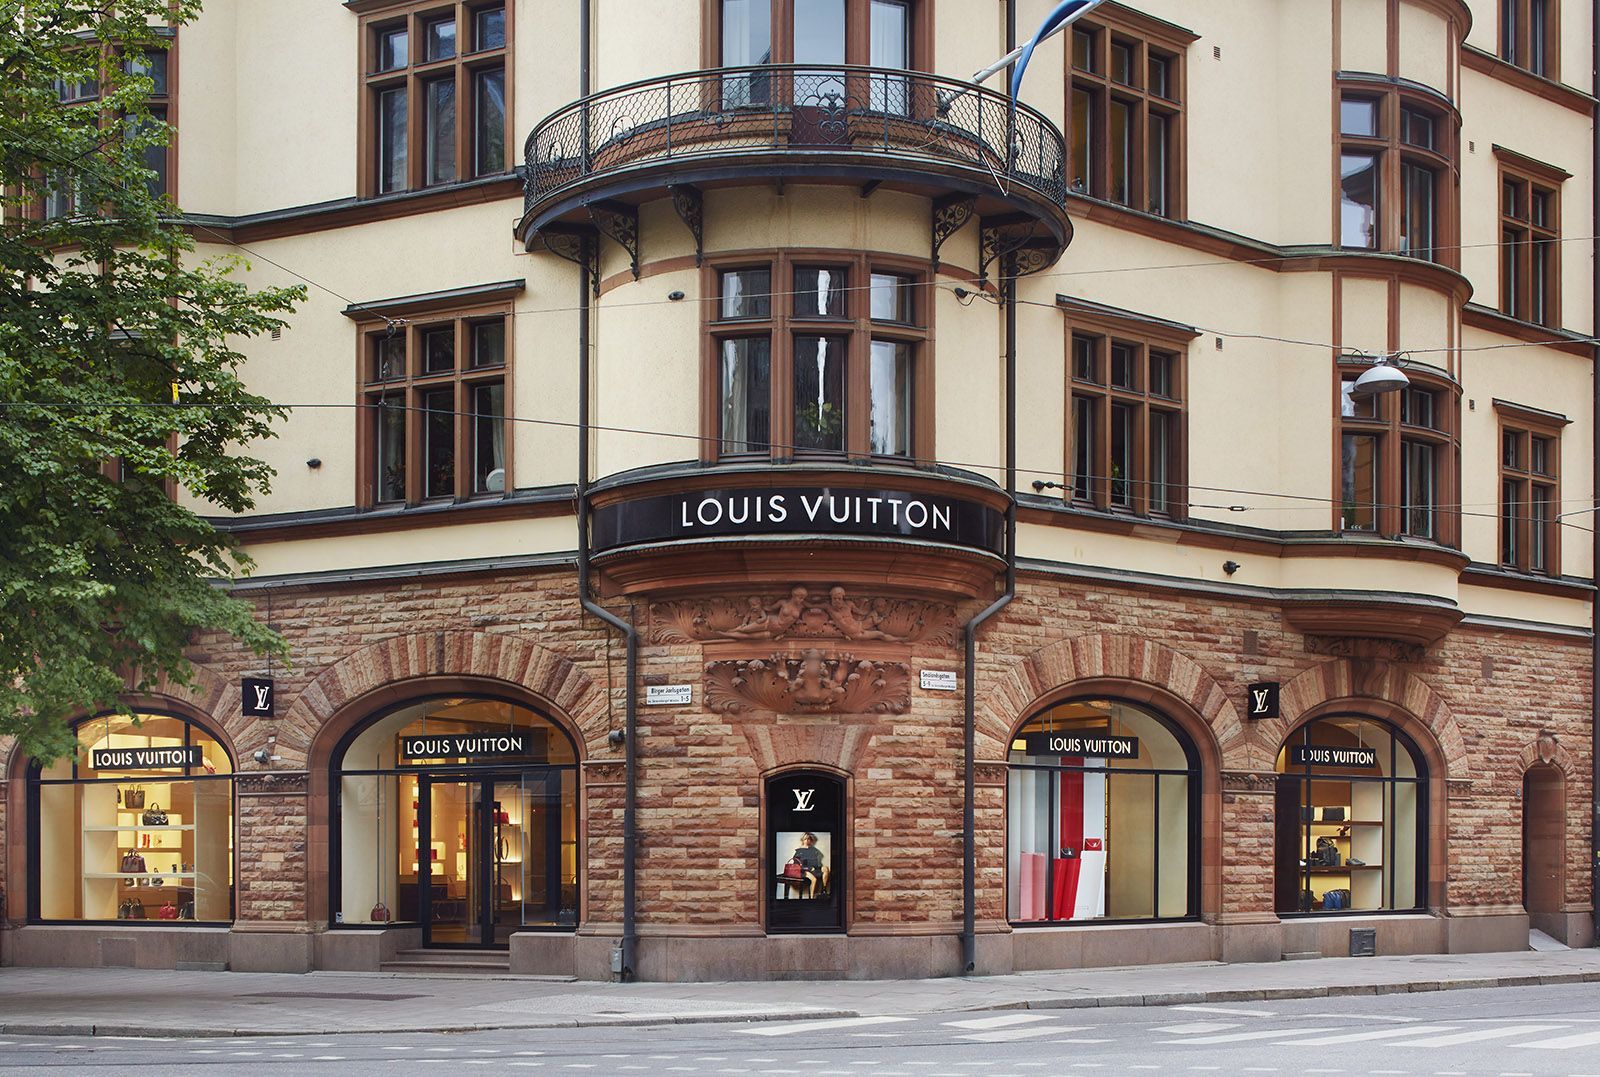 Louis Vuitton ежегодно тратит на борьбу с подделками 15 миллионов евро